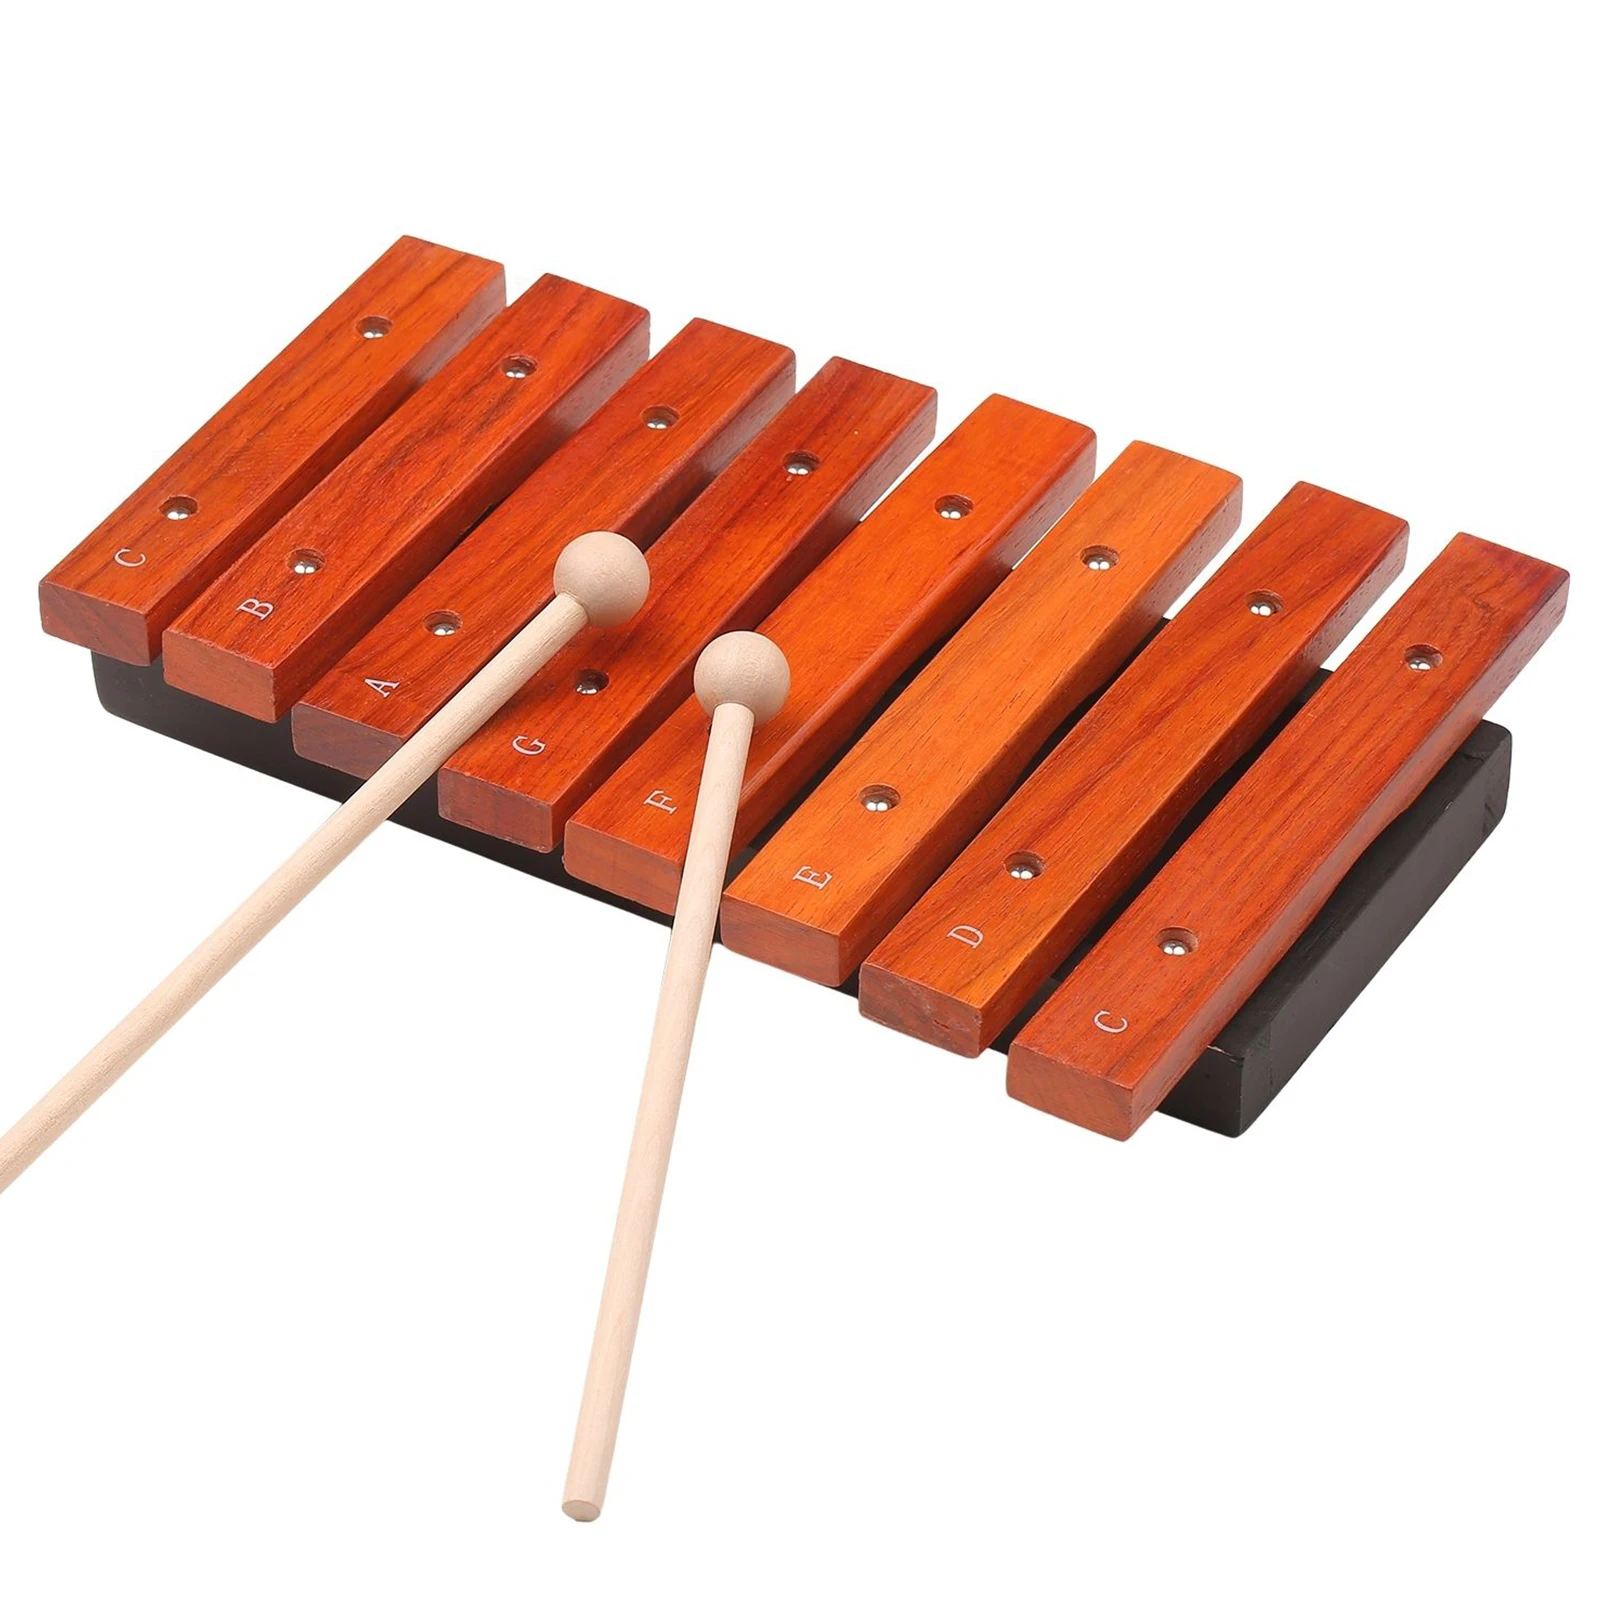 

Музыкальный инструмент 8 нот деревянный ксилофон включает 2 деревянных малета музыкальные игрушки перкуссионный инструмент